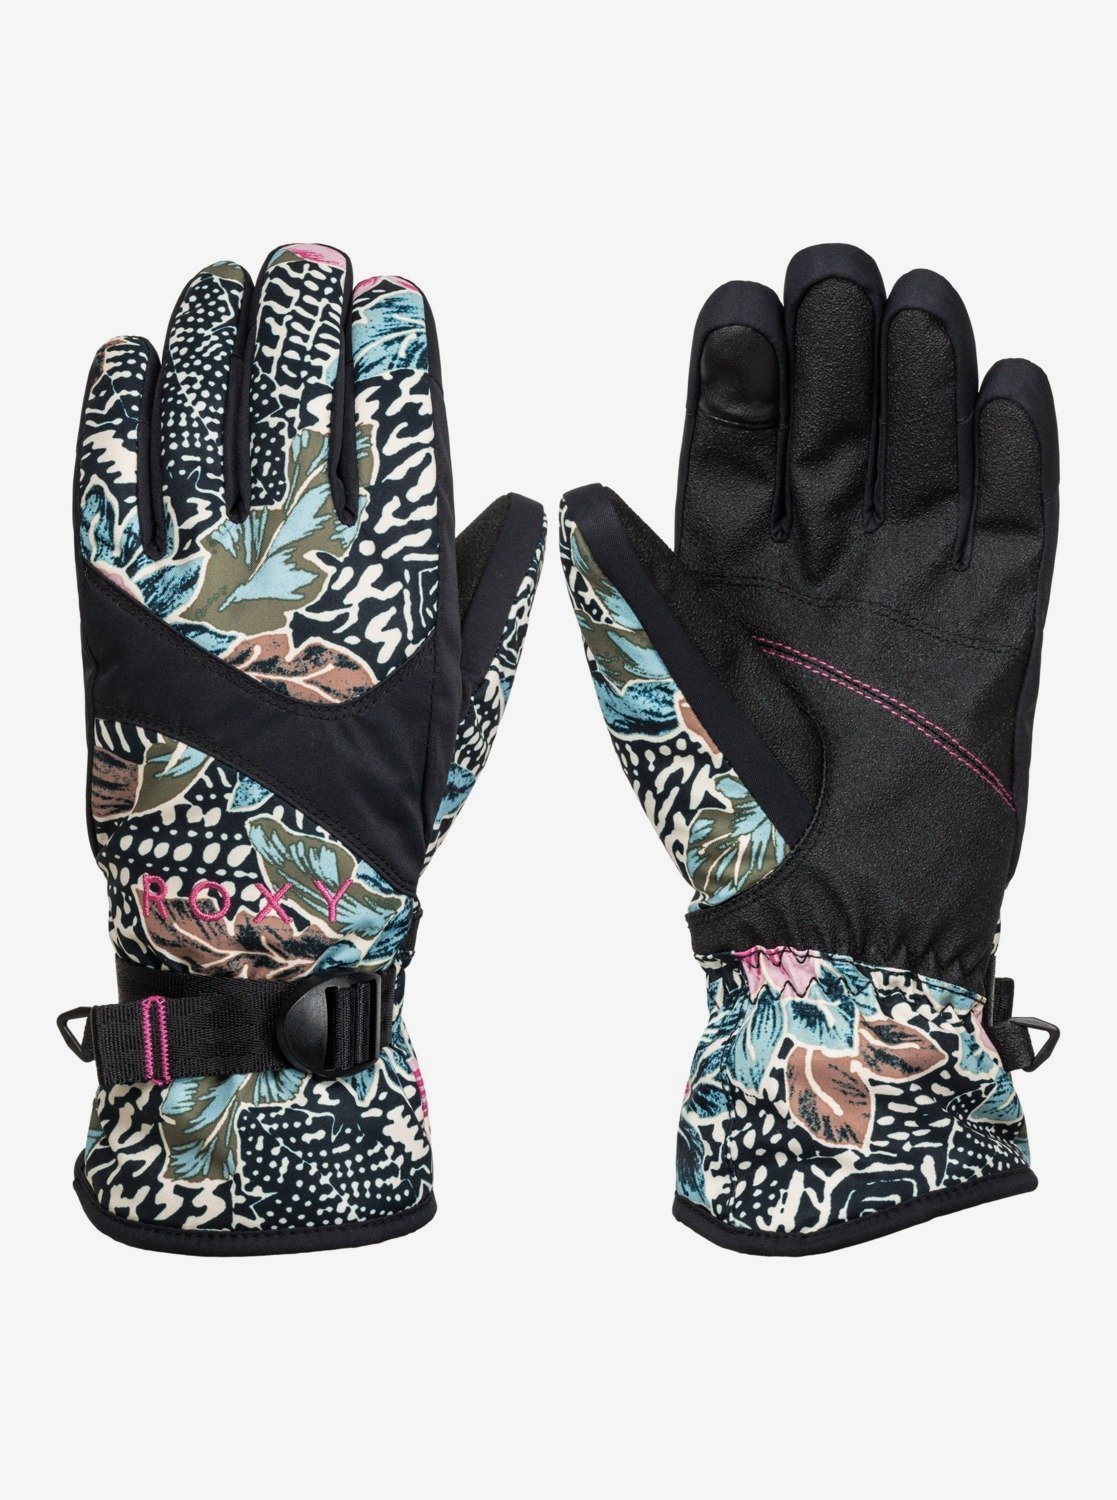 Розовые перчатки сноубордические roxy. Перчатки черные Roxy Jetty. Рокси перчатки женские. Roxy перчатки сноубордические. Roxy Hydrosmart перчатки.